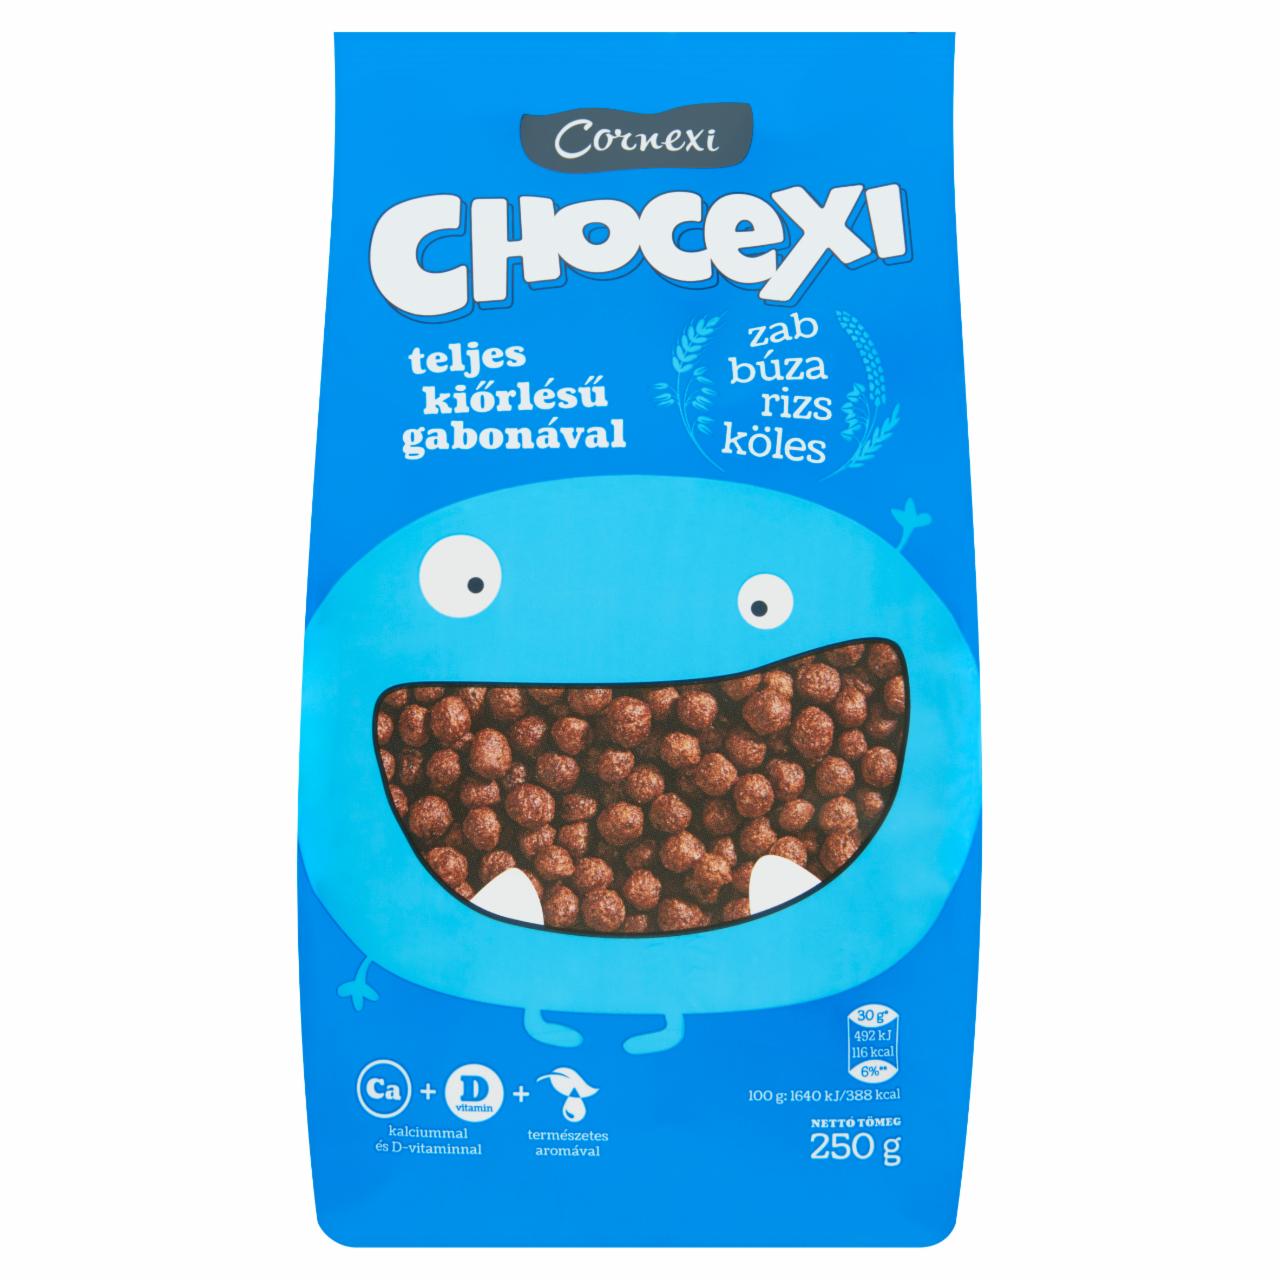 Képek - Cornexi Chocexi csokoládés gabonagolyó teljes kiőrlésű gabonával, Ca+D-vitaminnal 250 g